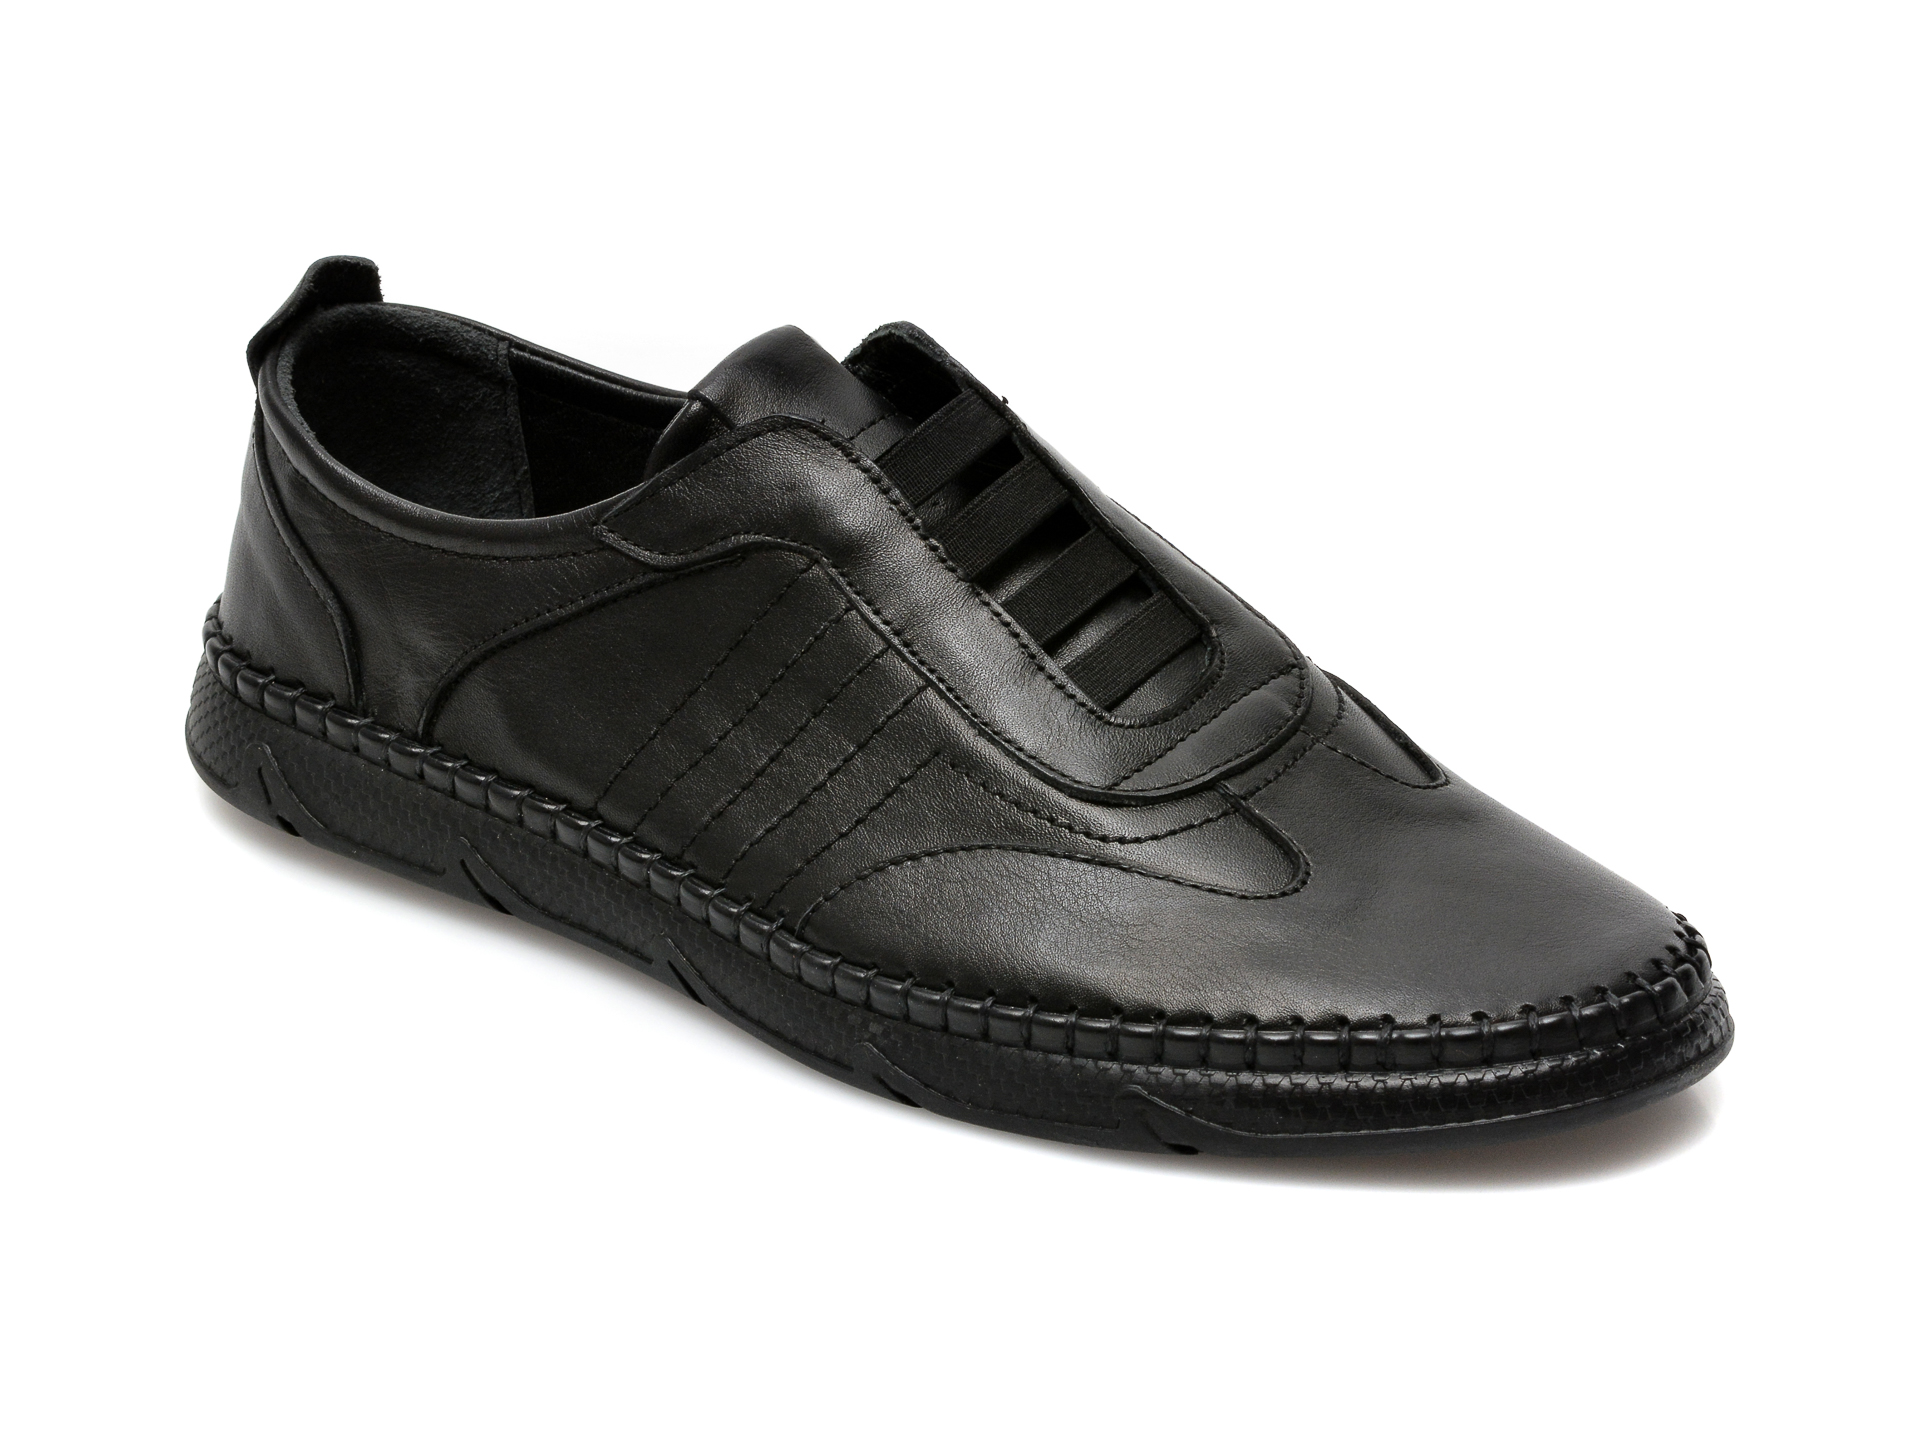 Pantofi OTTER negri, M5652, din piele naturala Otter poza reduceri 2021